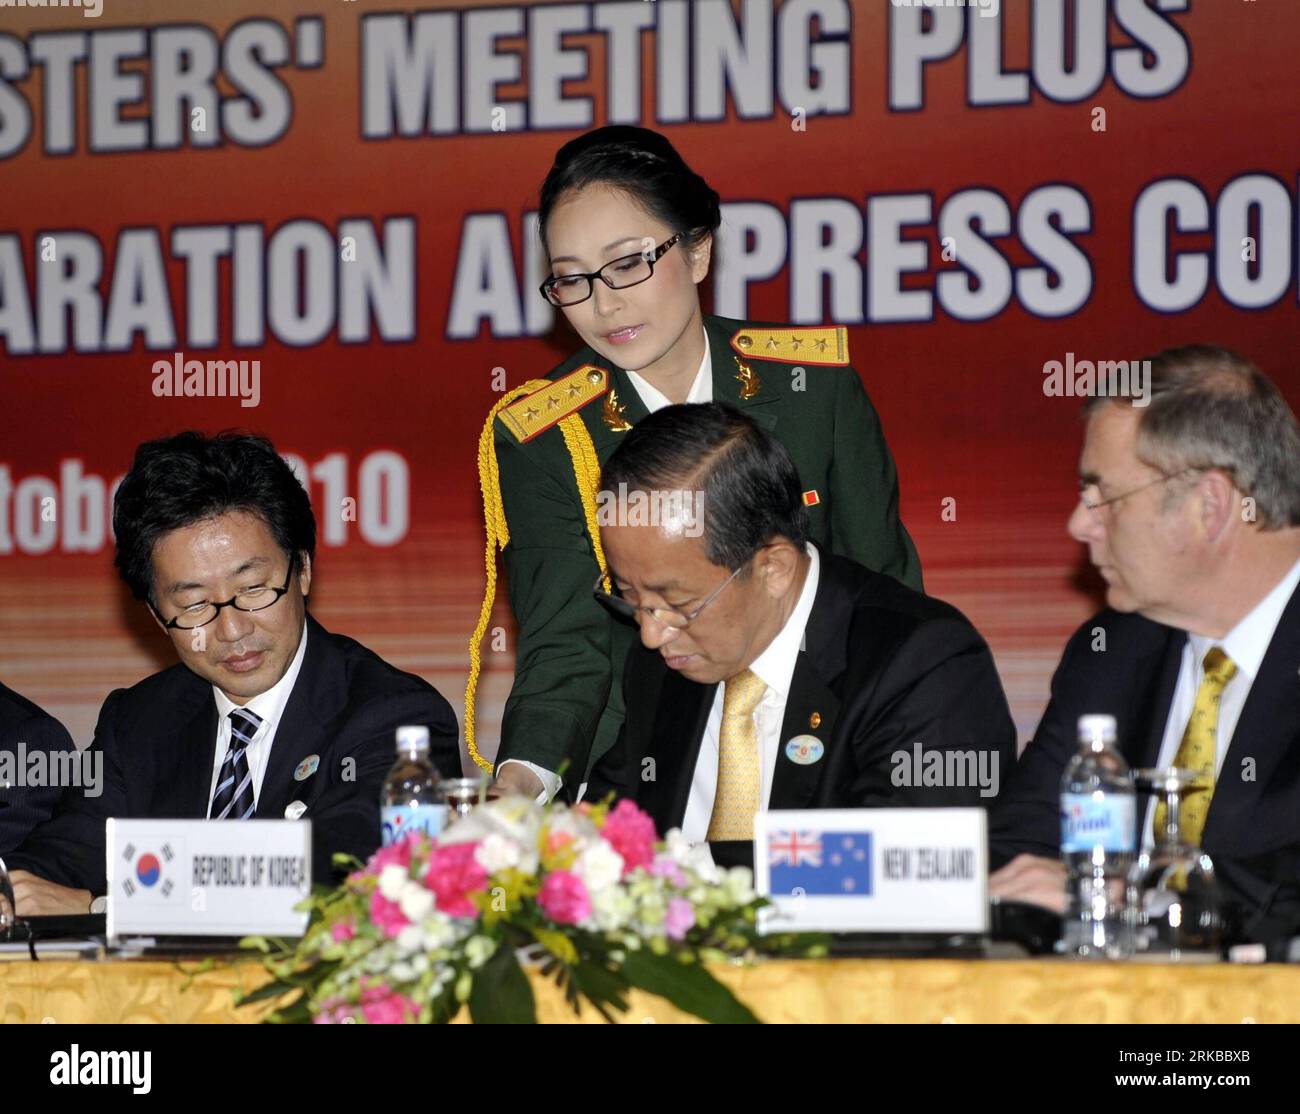 Bildnummer: 54530856 Datum: 12.10.2010 Copyright: imago/Xinhua (101012) -- HANOI, 12 ottobre 2010 (Xinhua) -- delegati del 1° incontro ASEAN dei Ministri della difesa Plus (ADMM-Plus) firmano la dichiarazione congiunta alla conferenza stampa di Hanoi, Vietnam, 12 ottobre 2010. Il primo incontro dei ministri della difesa dell'ASEAN Plus (ADMM-Plus) si è concluso qui martedì con i partecipanti che hanno presentato una dichiarazione congiunta che dimostra la loro volontà politica di rafforzare la cooperazione per affrontare le sfide non tradizionali in materia di sicurezza. (Xinhua/Huang Xiaoyong) (zcc) VIETNAM-HANOI-ADMM-PLUS PUBLICATIONxNOTxINxCHN People Politik KB Foto Stock